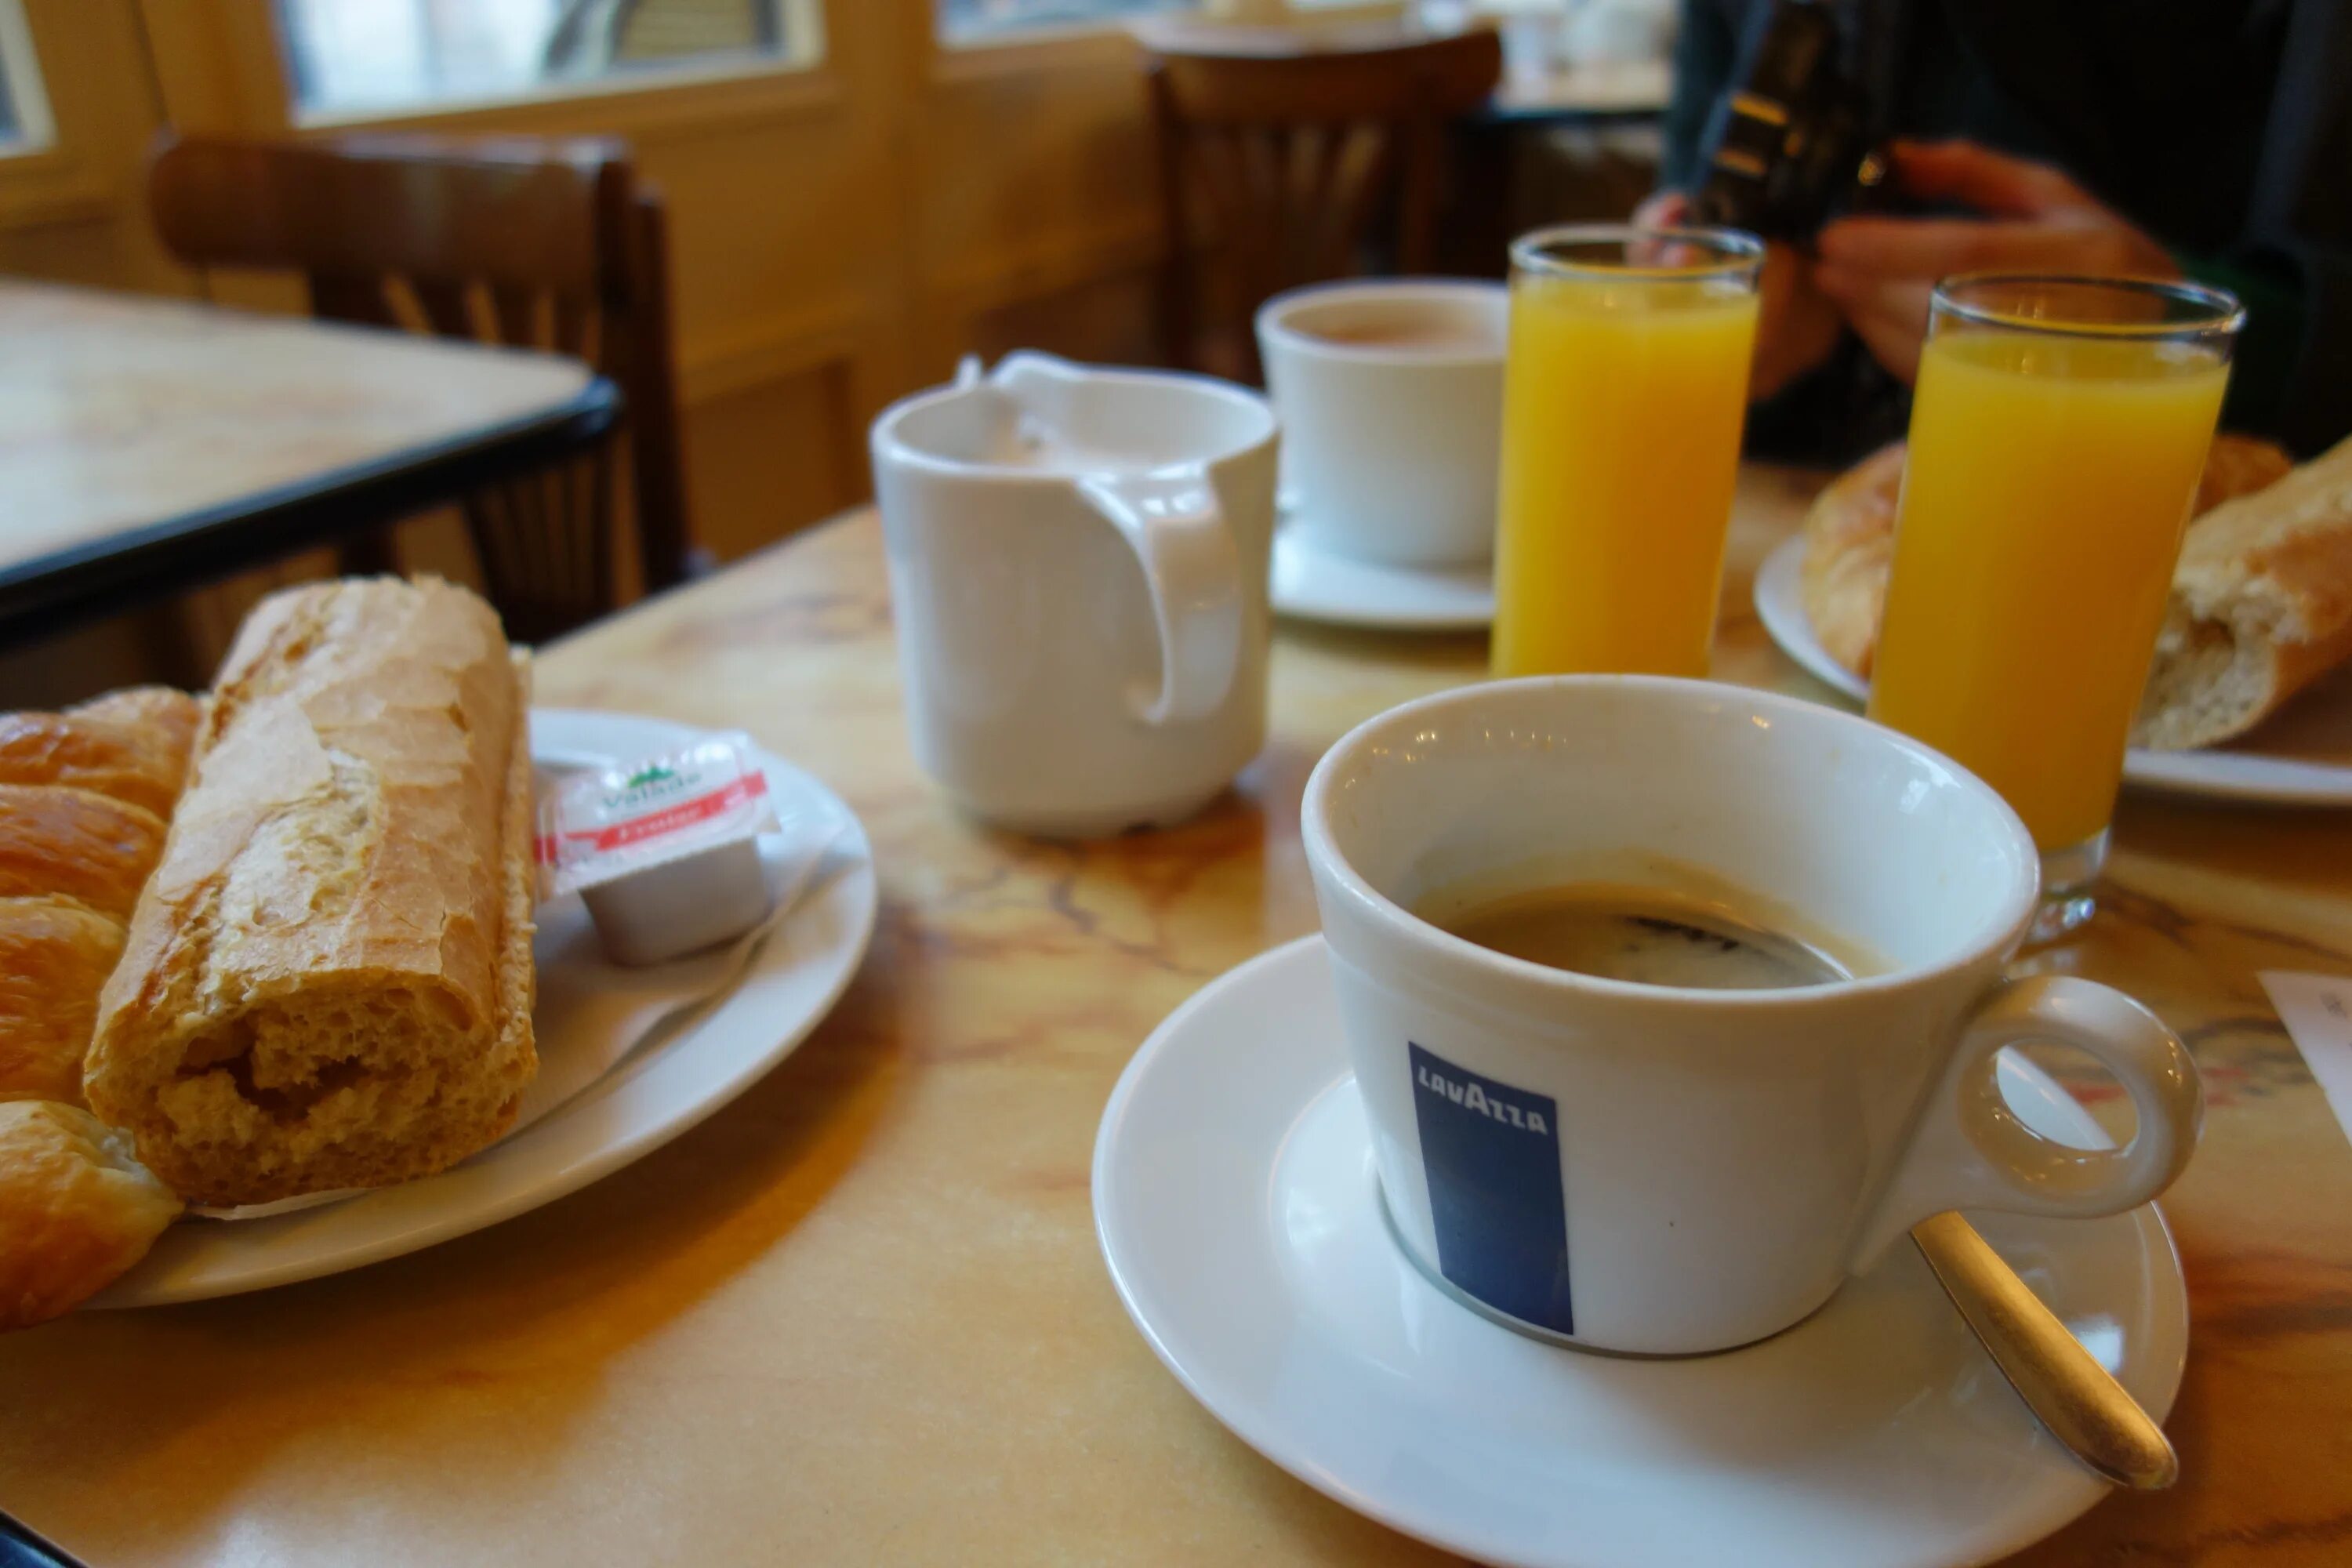 Завтрак с апельсиновым соком. Завтрак в кафе. Кофе с апельсиновым соком. Завтрак с кофе в кафе. Апельсиновый сок на завтрак